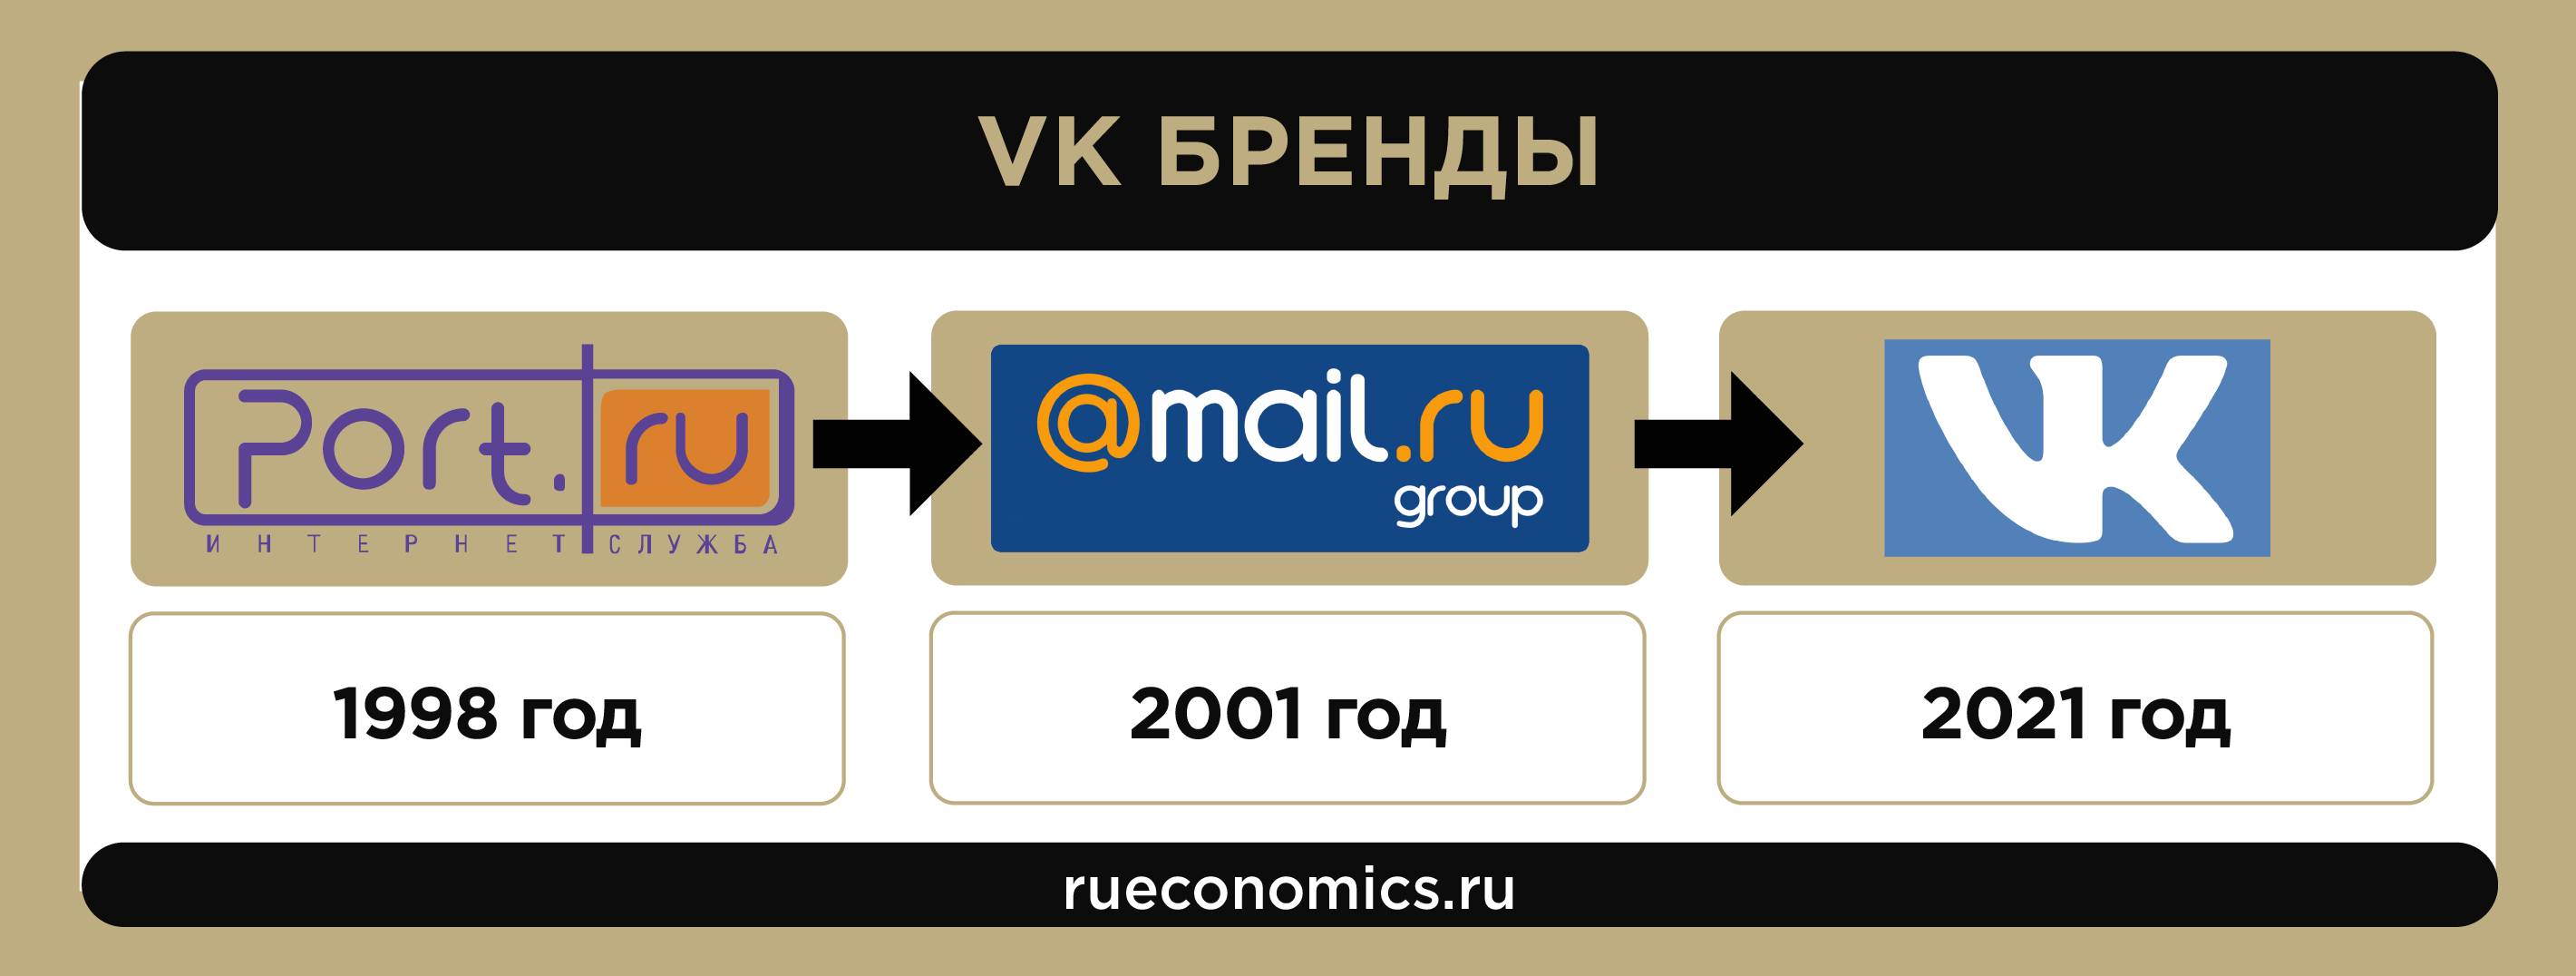 Путь от Mail.ru Group до VK: как почтовый сервис стал транснациональной корпорацией